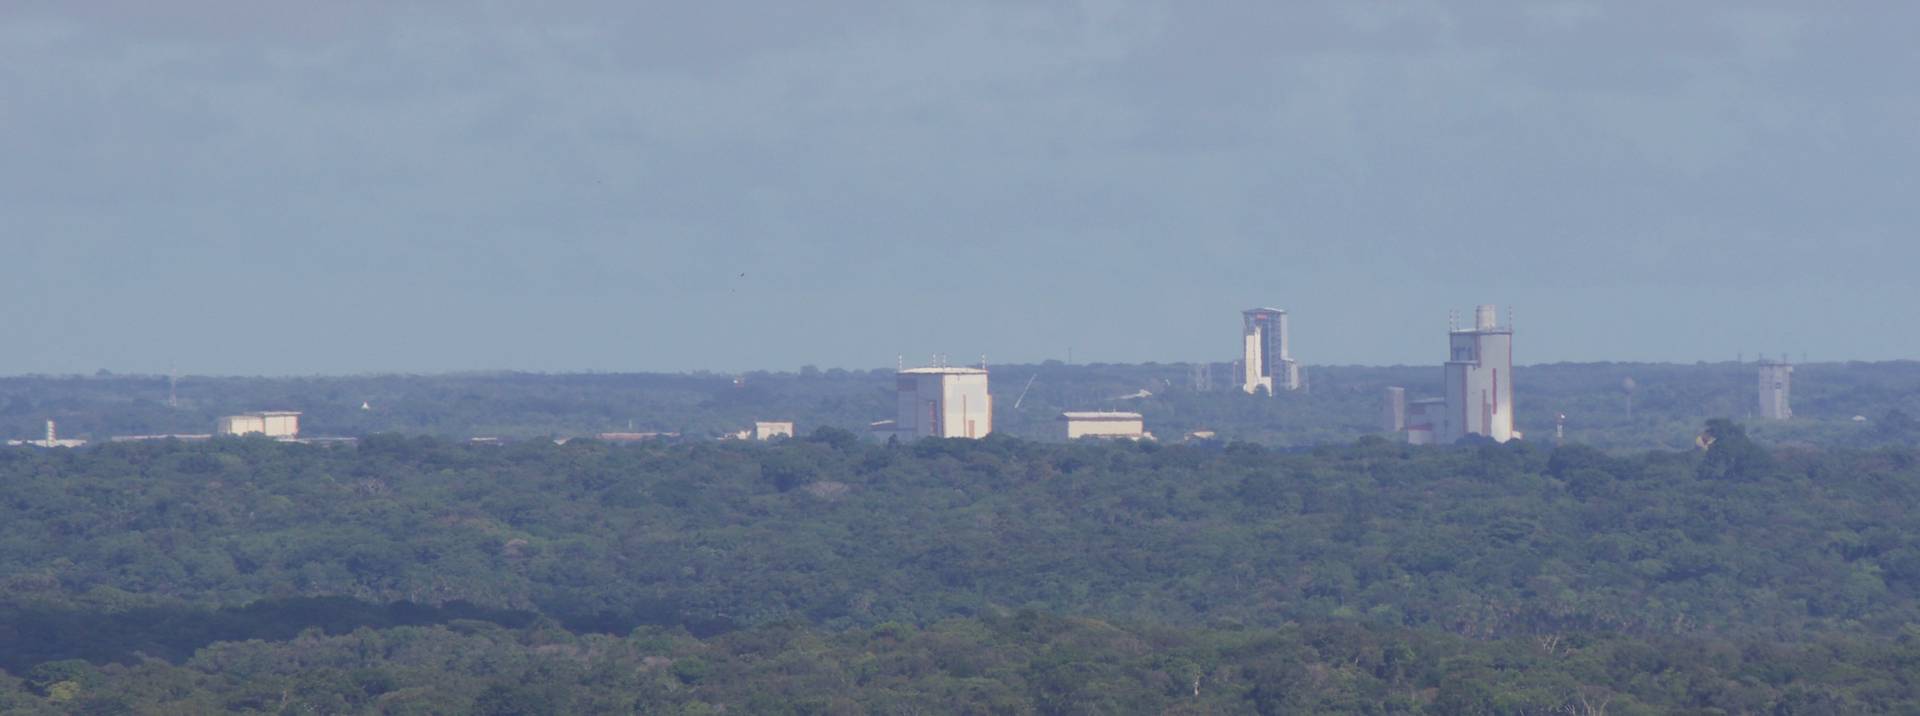 Панорамный вид на Гвианский космический центр (CSG)